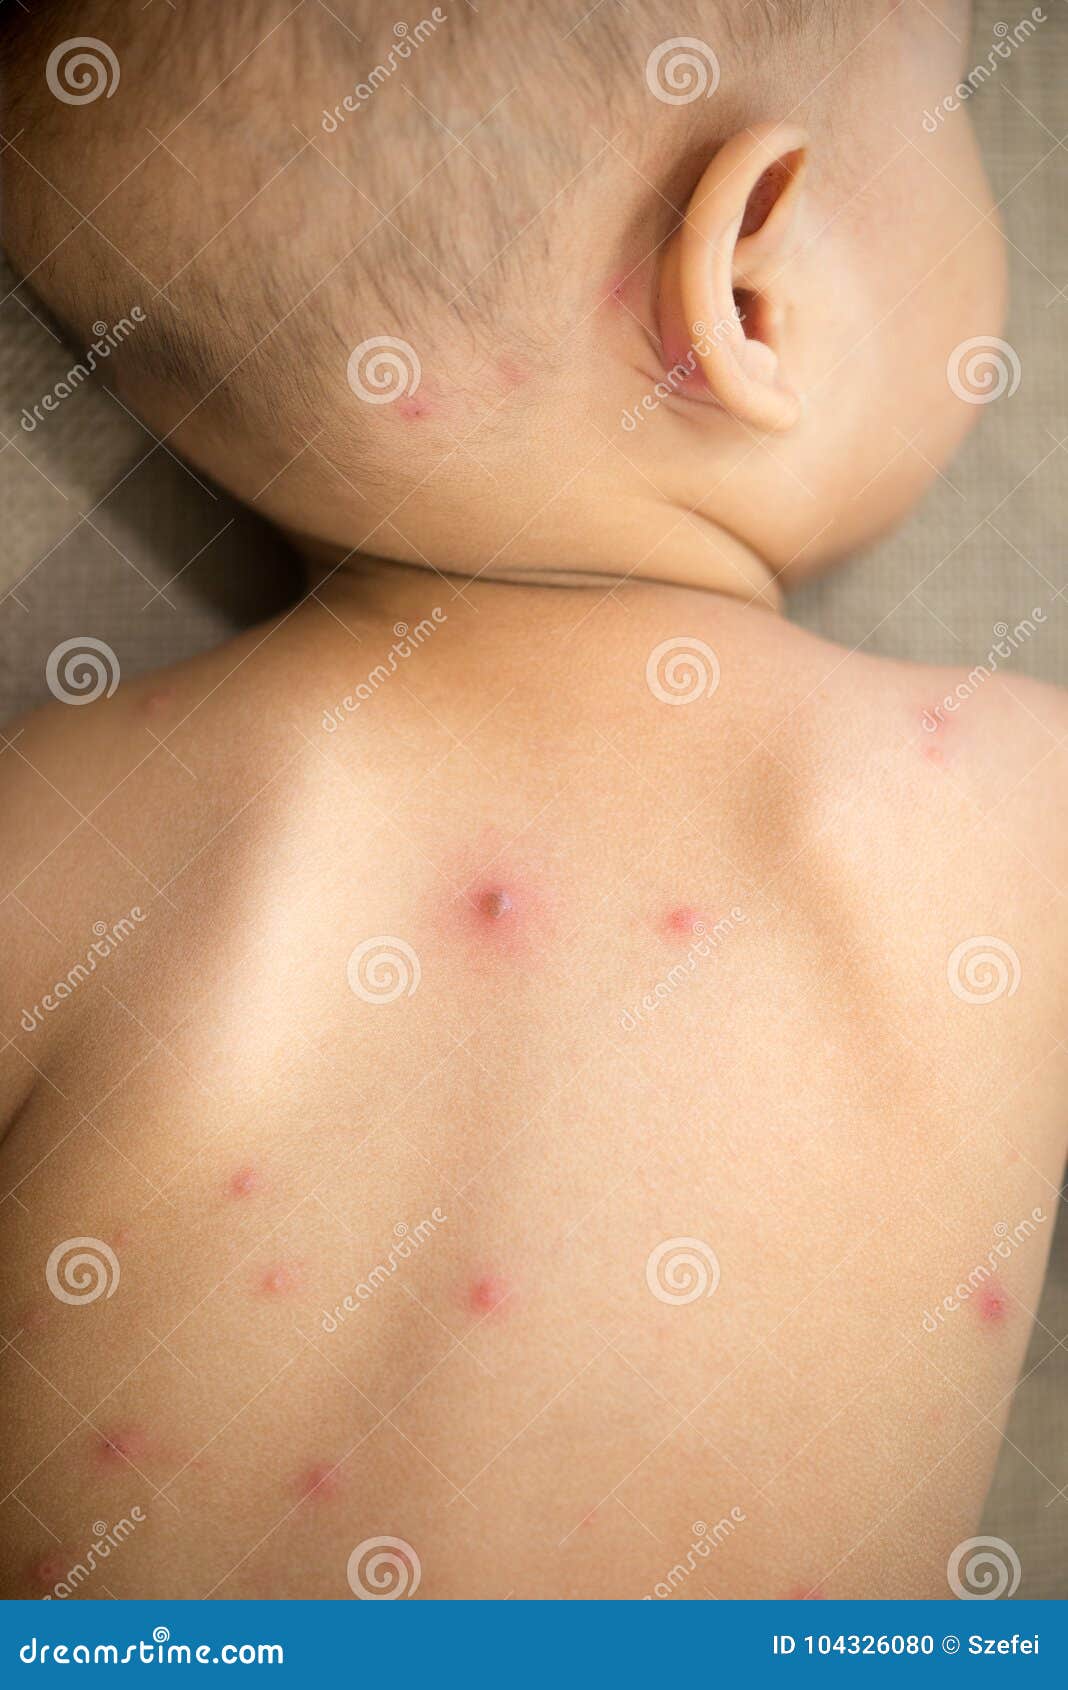 儿童水痘症状图片 初期水痘图片真实→MAIGOO图库